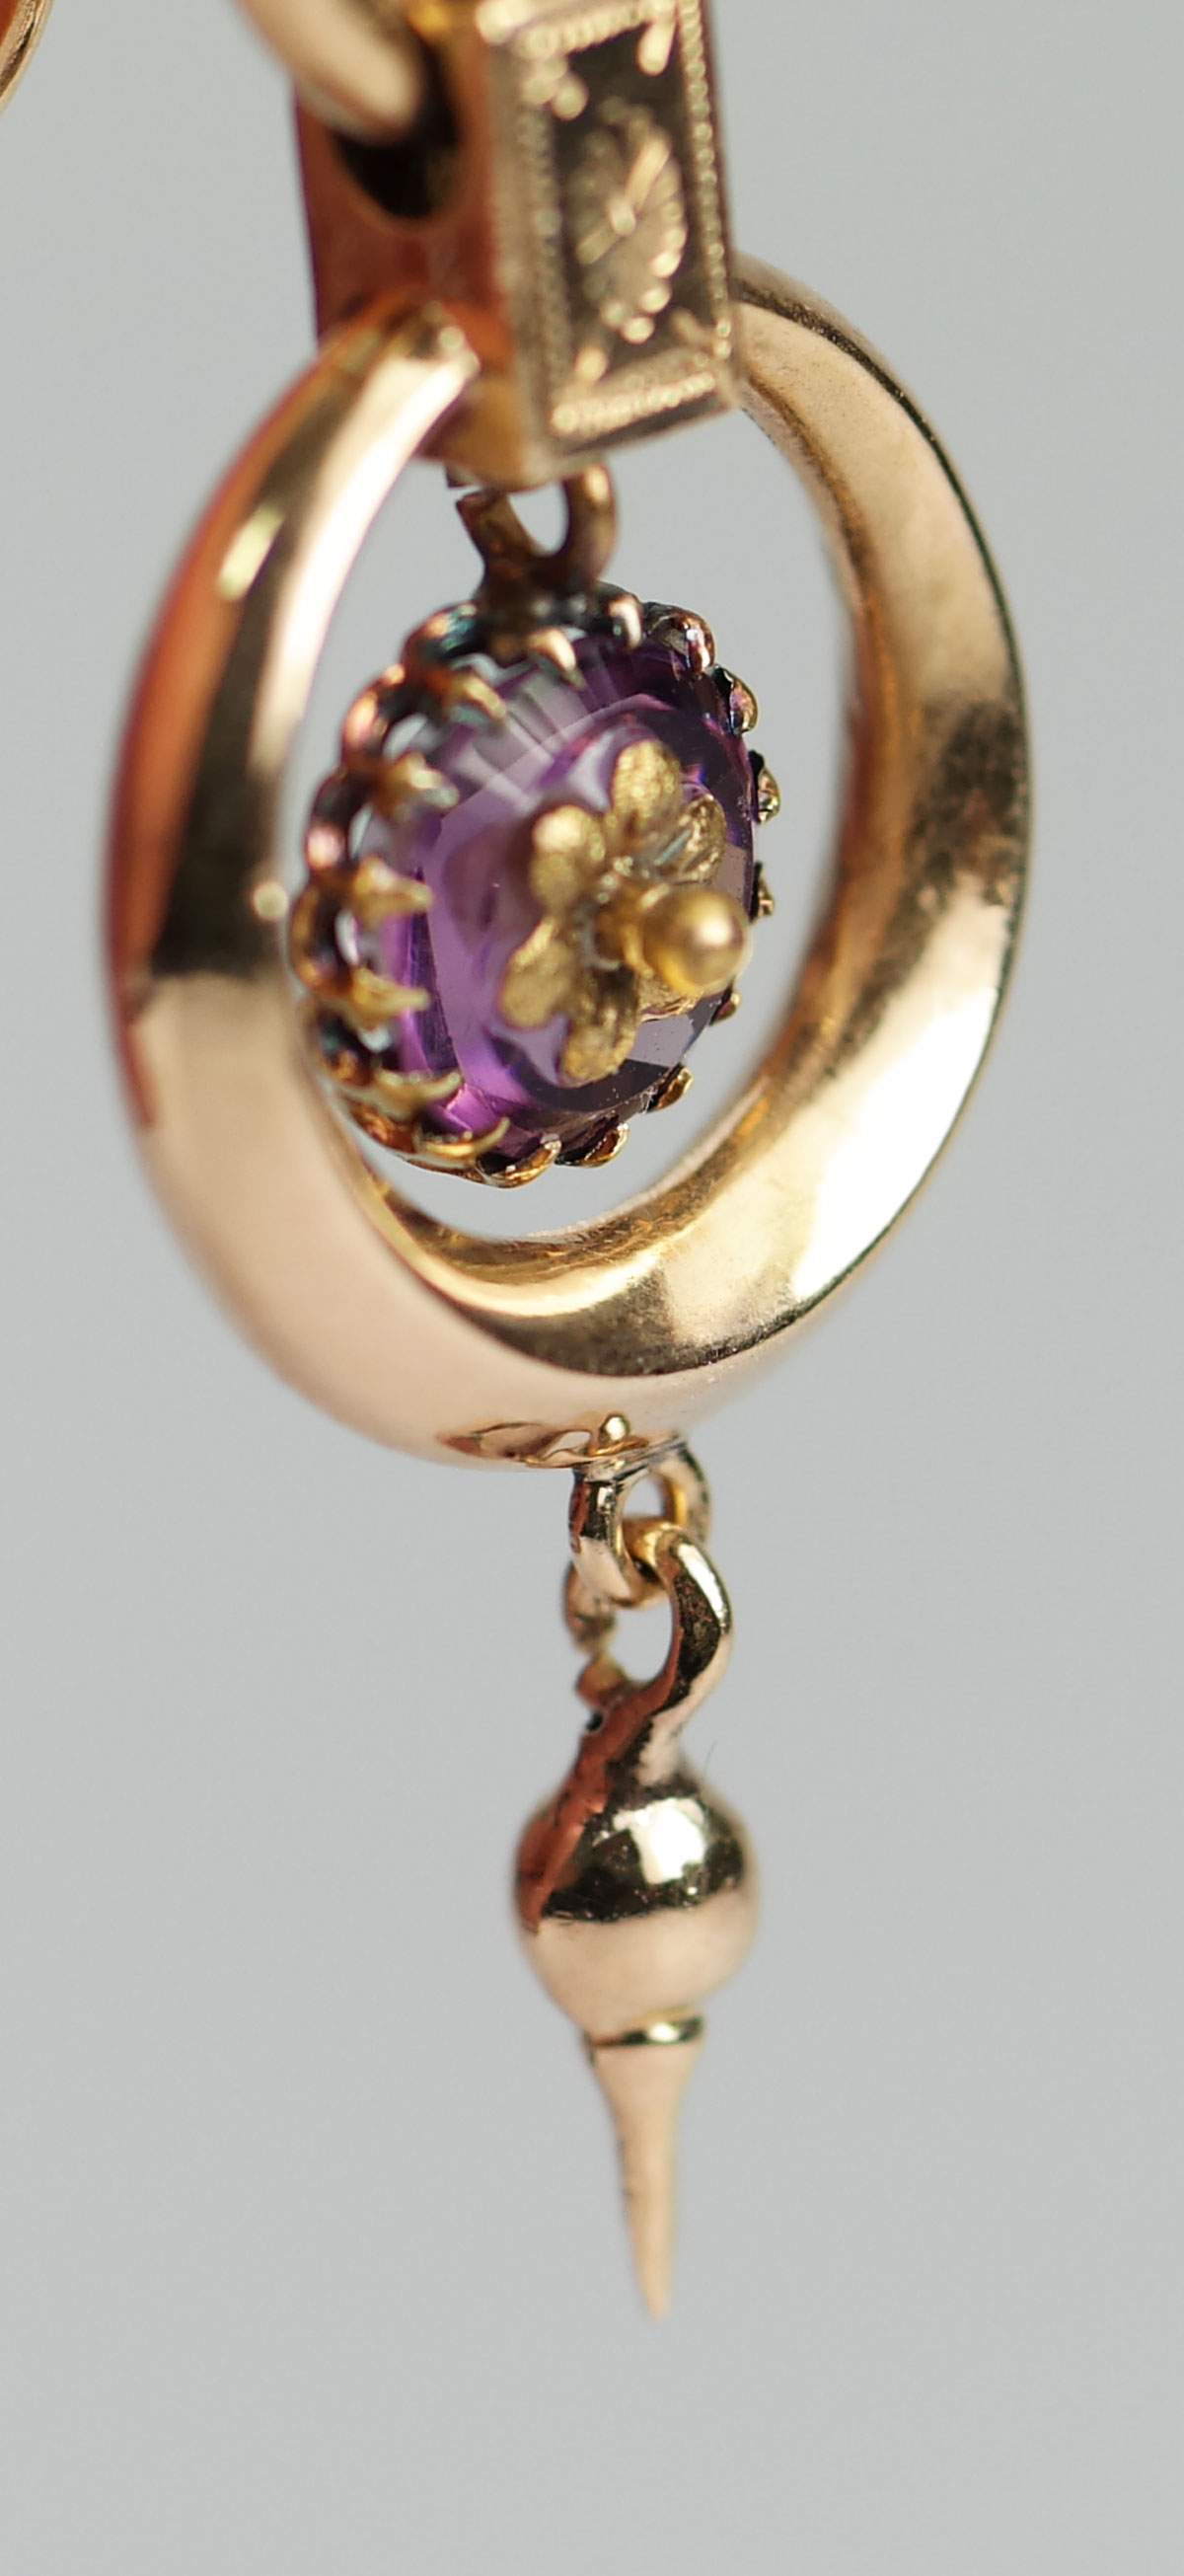 Schandelijk Arbeid Ewell Antieke gouden oorbellen met amethist - Antieke Sieraden - Kroone & Co